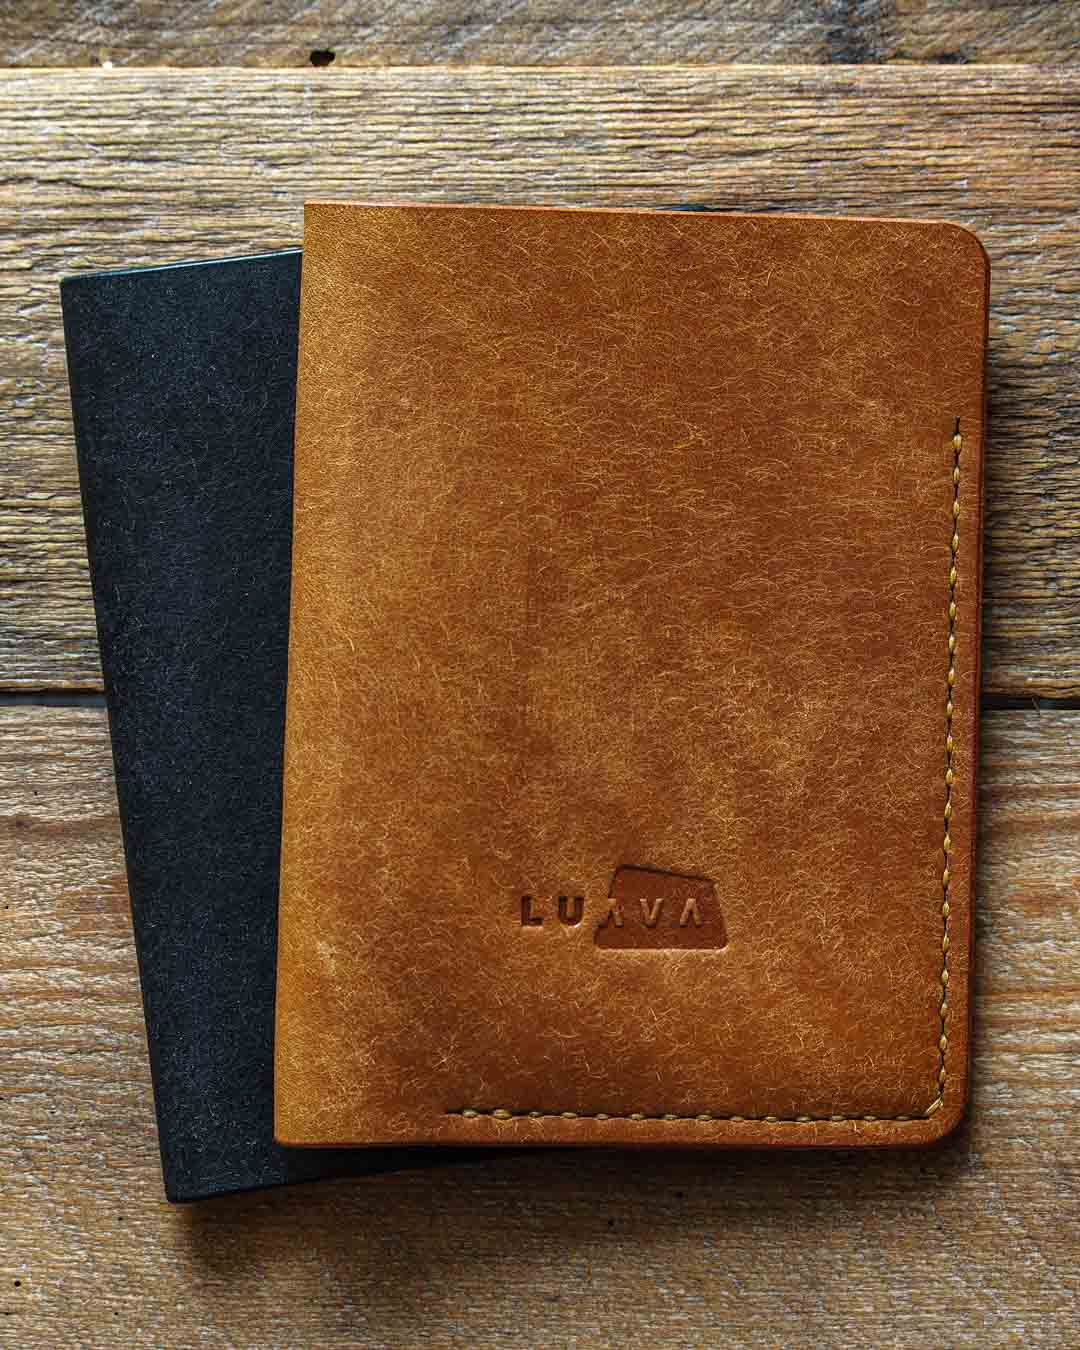 Luava leather passport cover pueblo black cognac